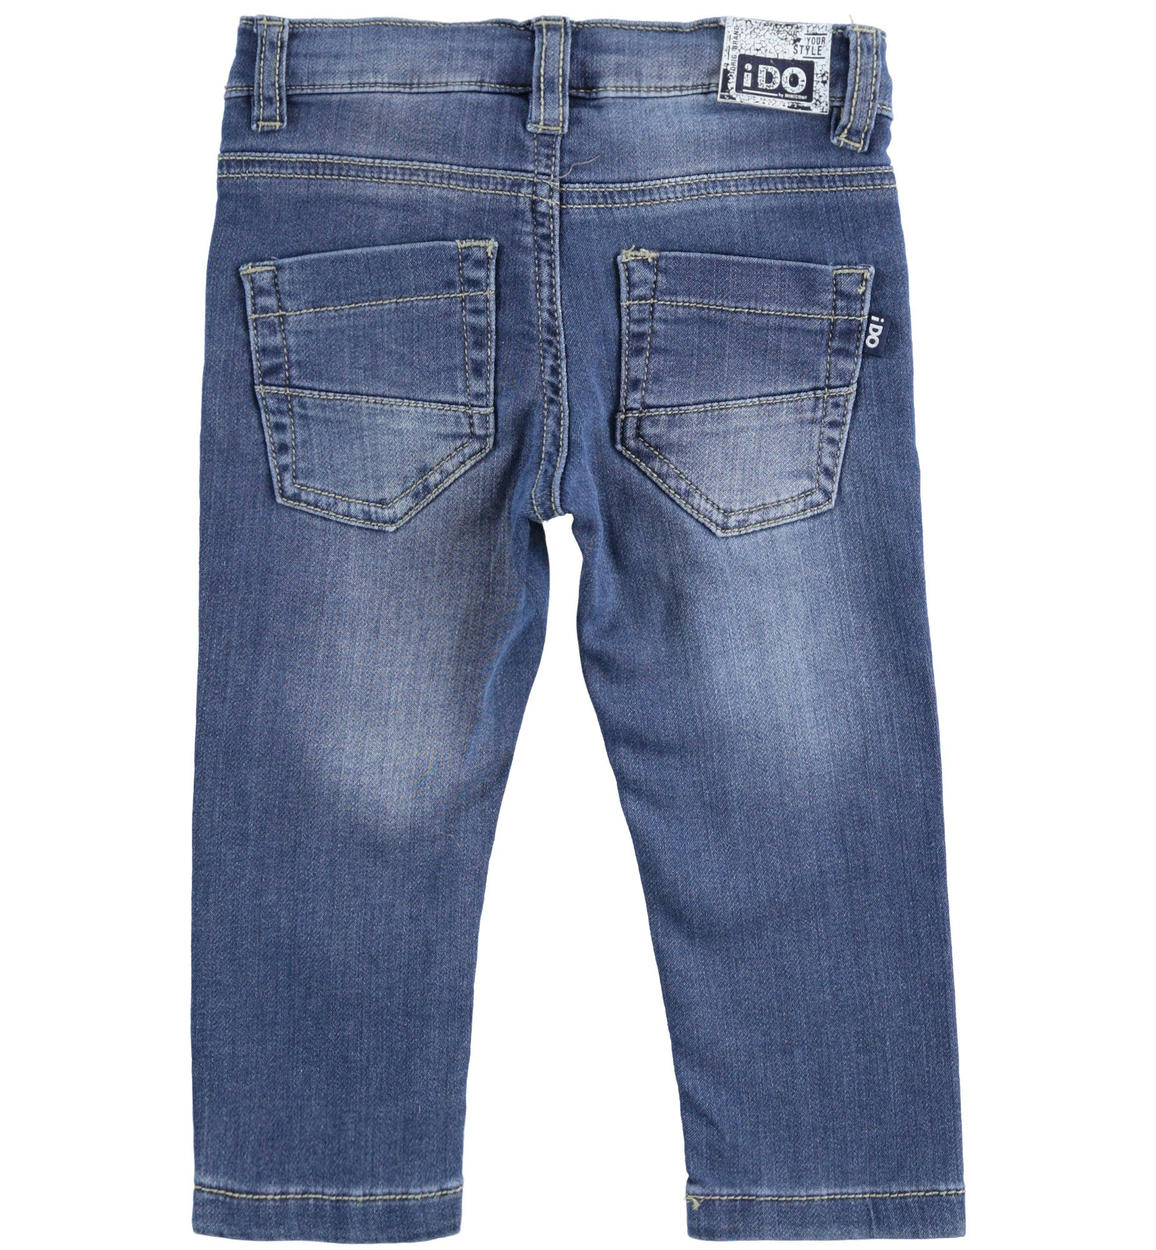 Pantalone in denim con toppe per bambino da 6 mesi a 7 anni iDO - Miniconf  Shop